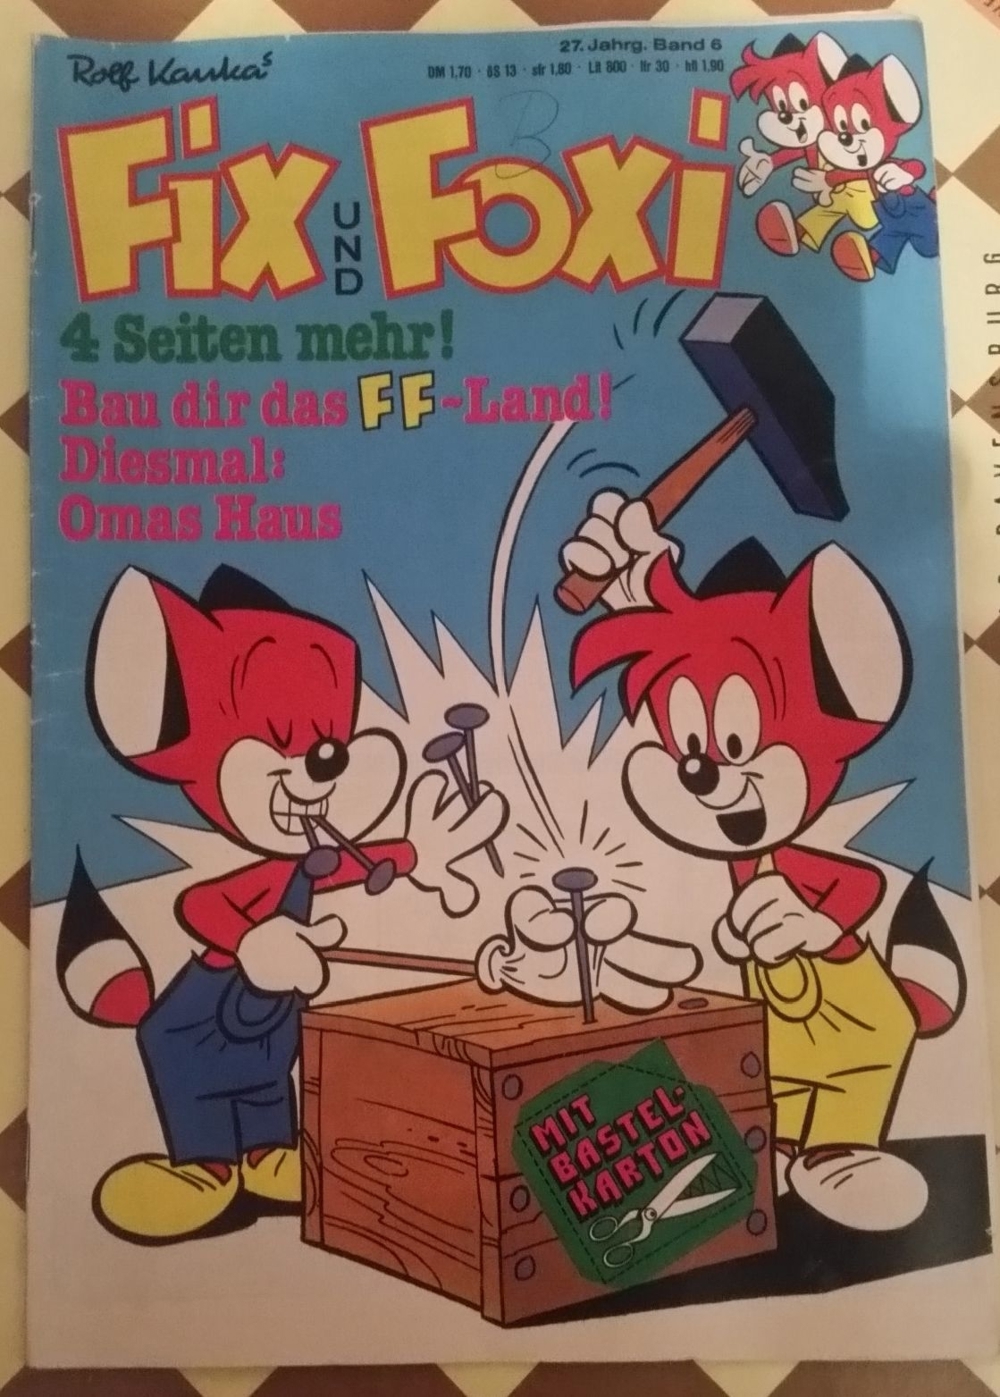 Fix & Foxi Heft Band 6 - 27. Jahrgang